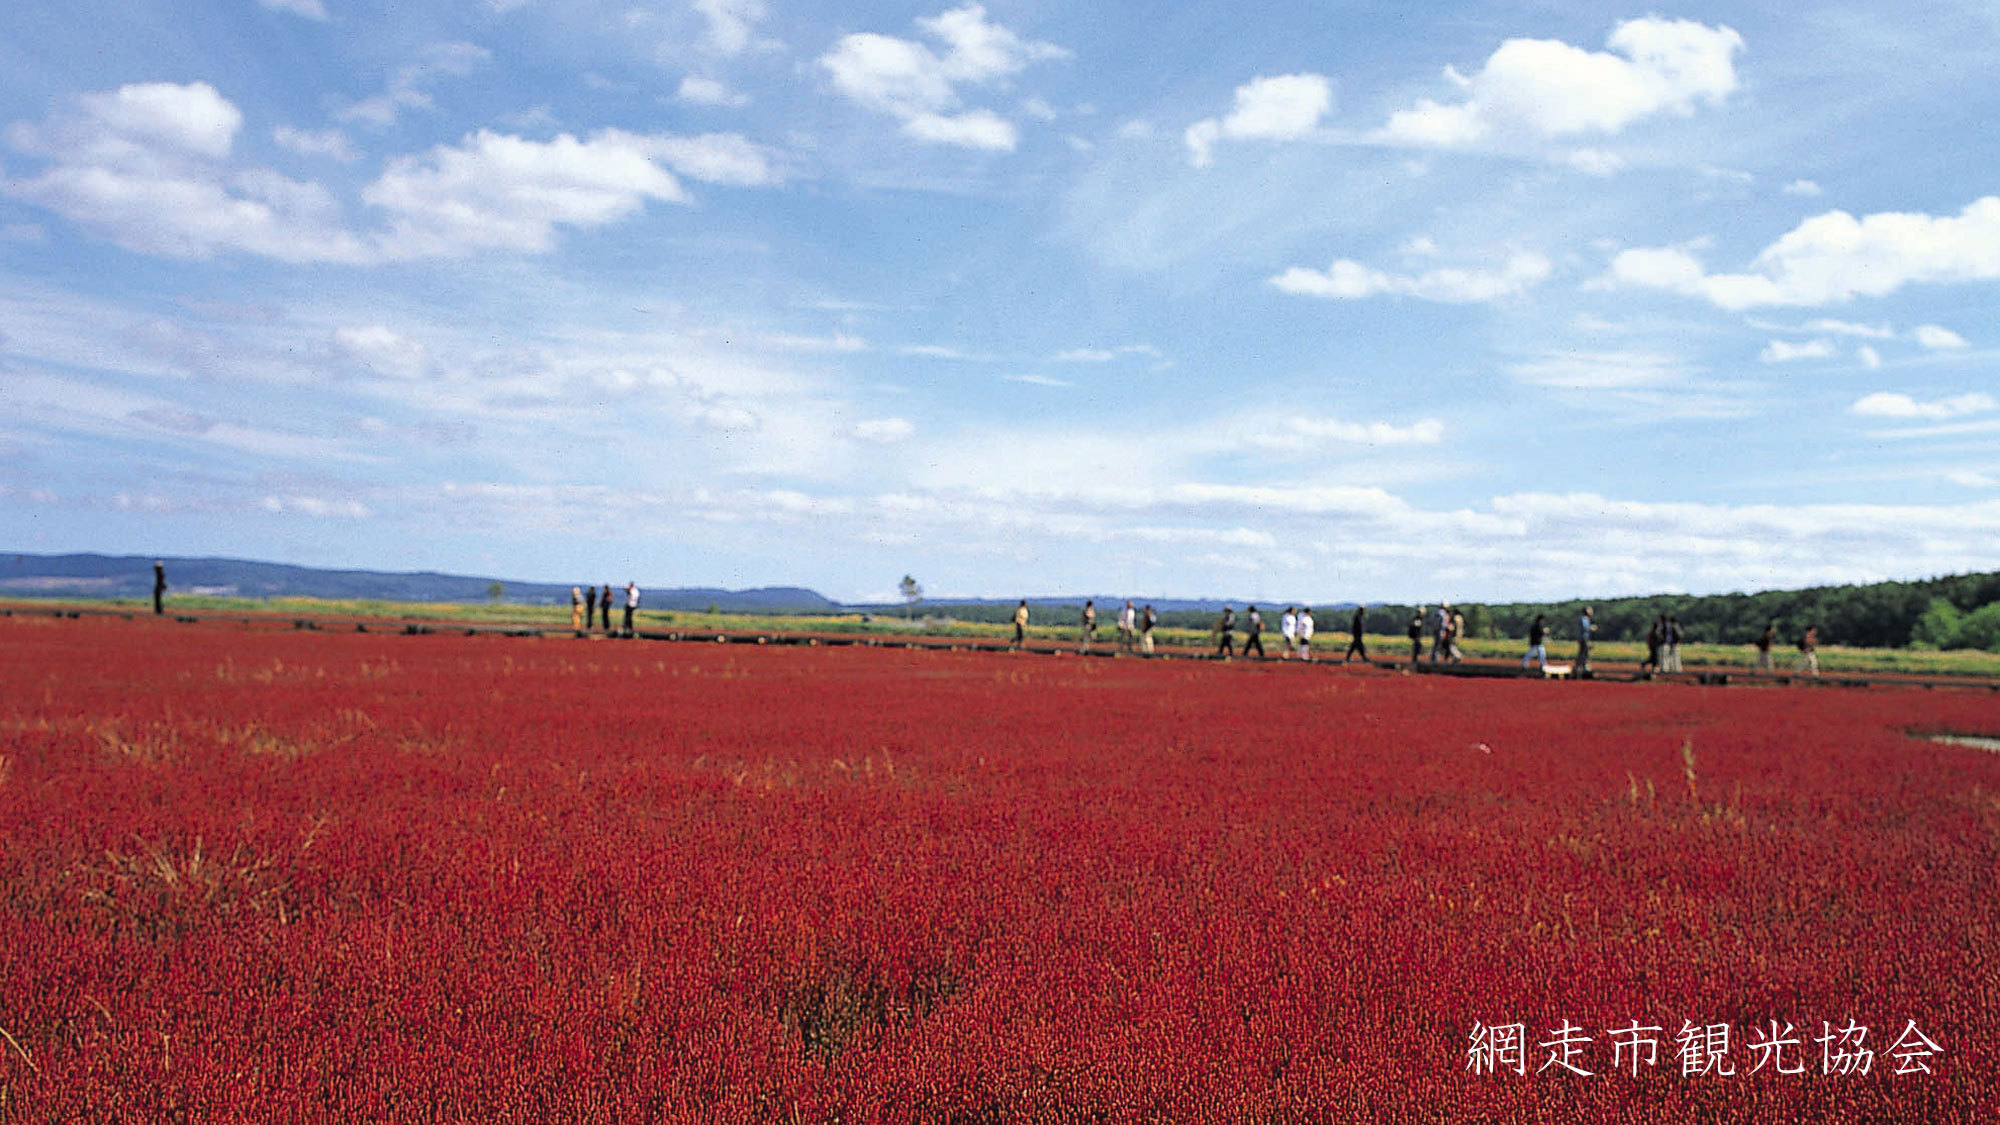 *［能取湖］当館より車で約17分。「真紅のカーペット」と呼ばれるサンゴ草の例年見頃は9月中旬〜下旬